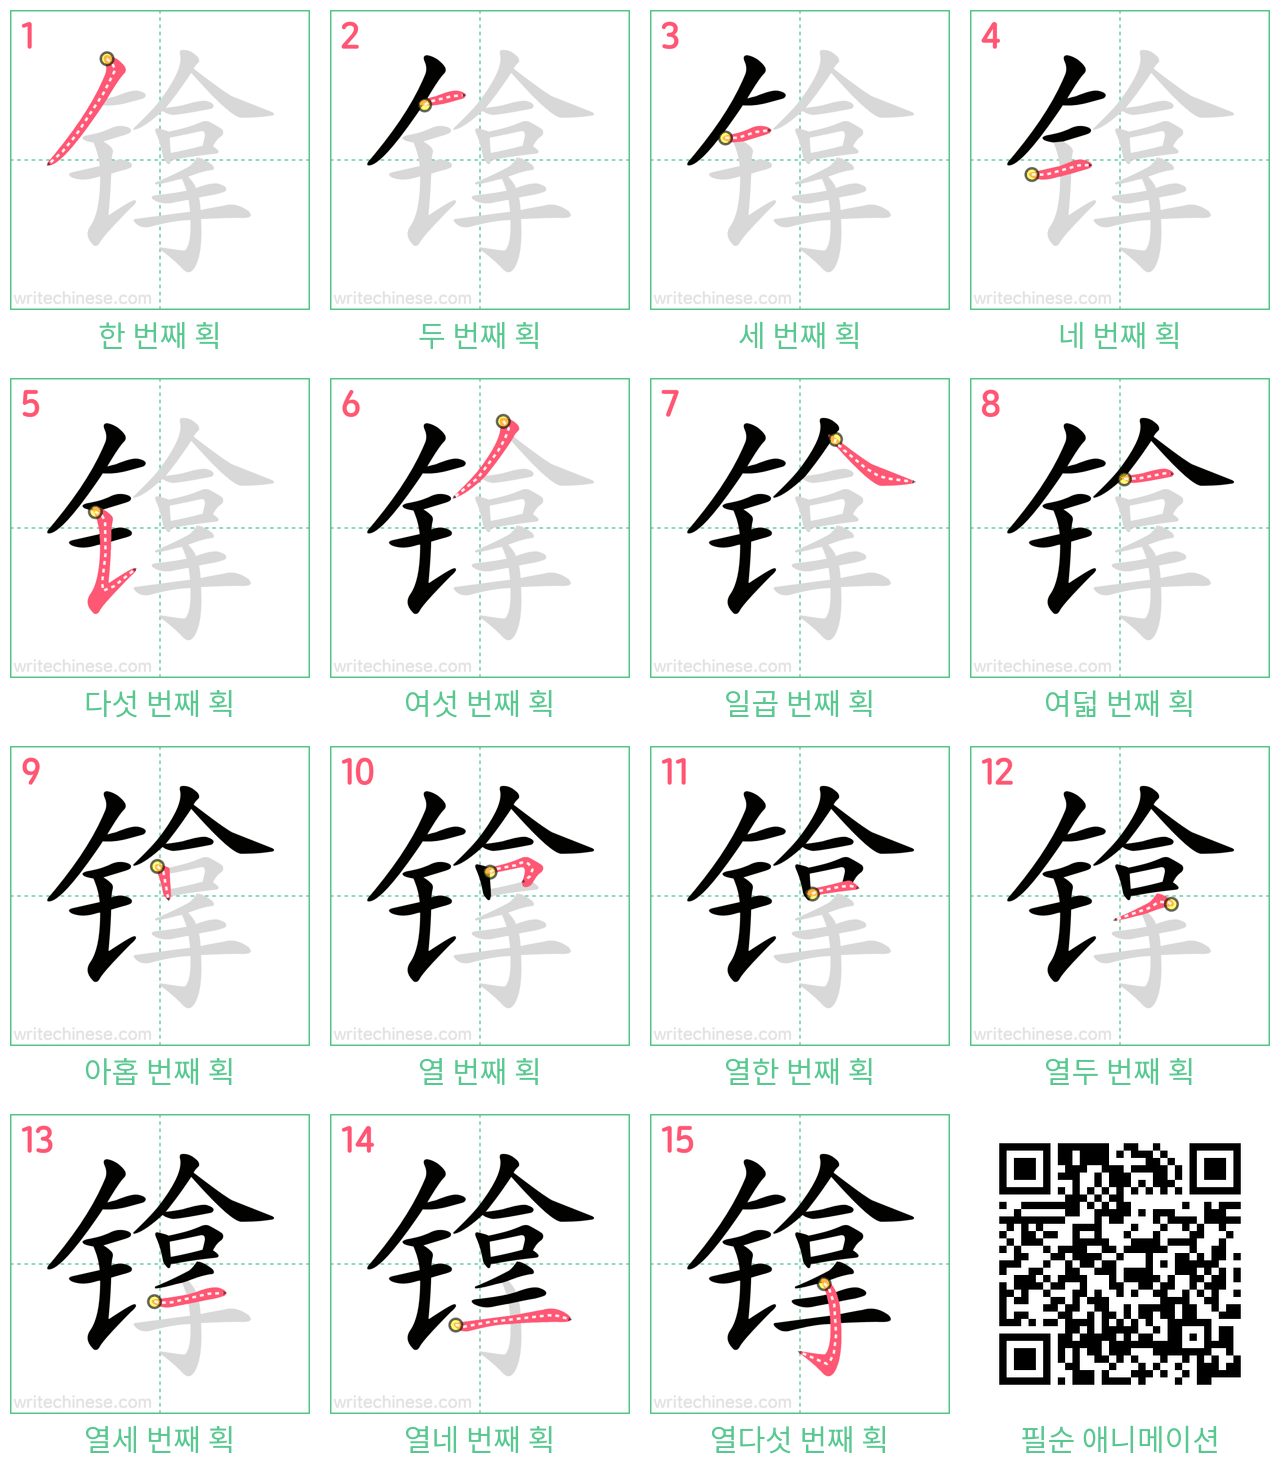 镎 step-by-step stroke order diagrams